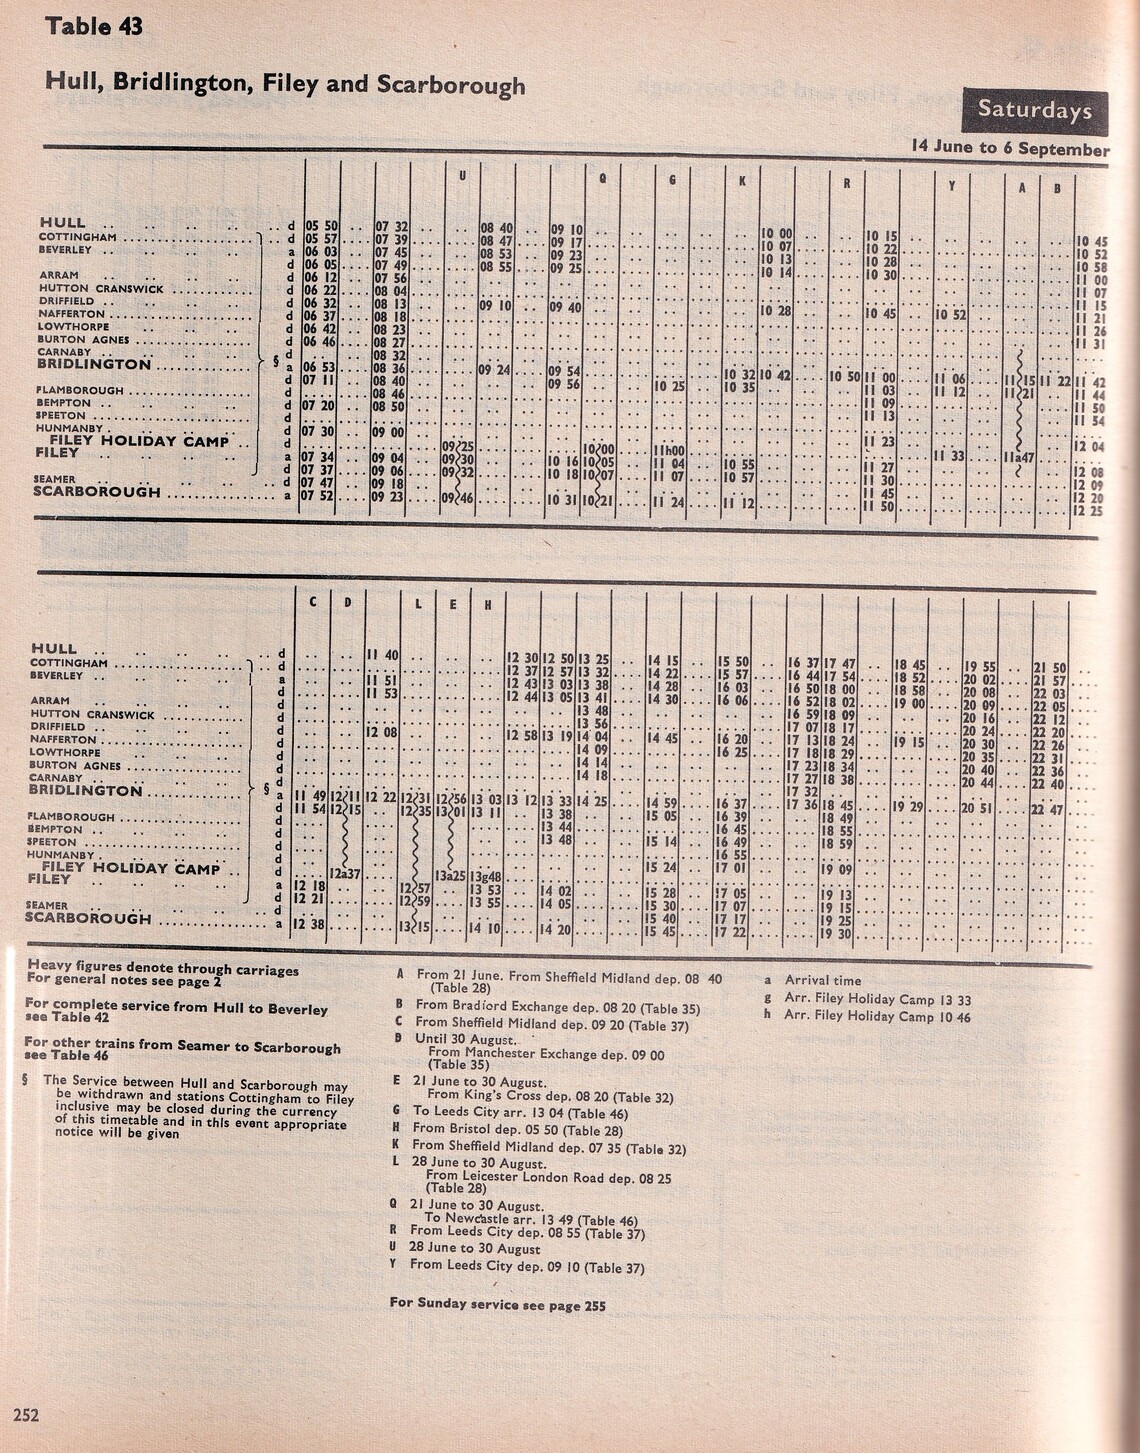 Sumer Saturday May 1969 to May 1970 timetable